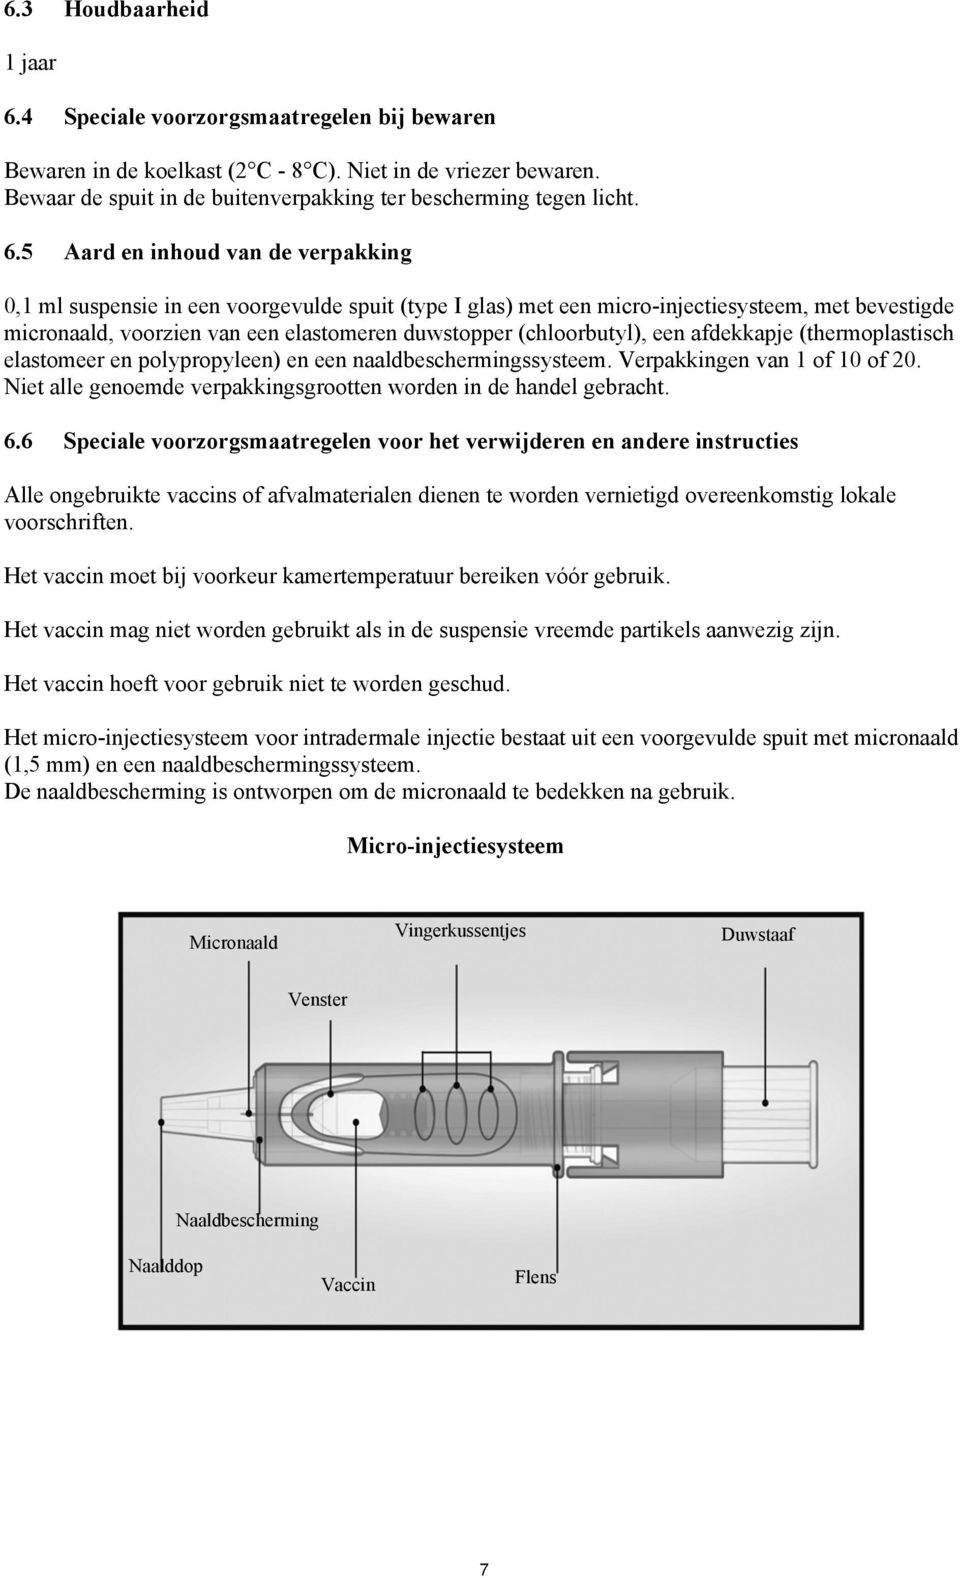 5 Aard en inhoud van de verpakking 0,1 ml suspensie in een voorgevulde spuit (type I glas) met een micro-injectiesysteem, met bevestigde micronaald, voorzien van een elastomeren duwstopper